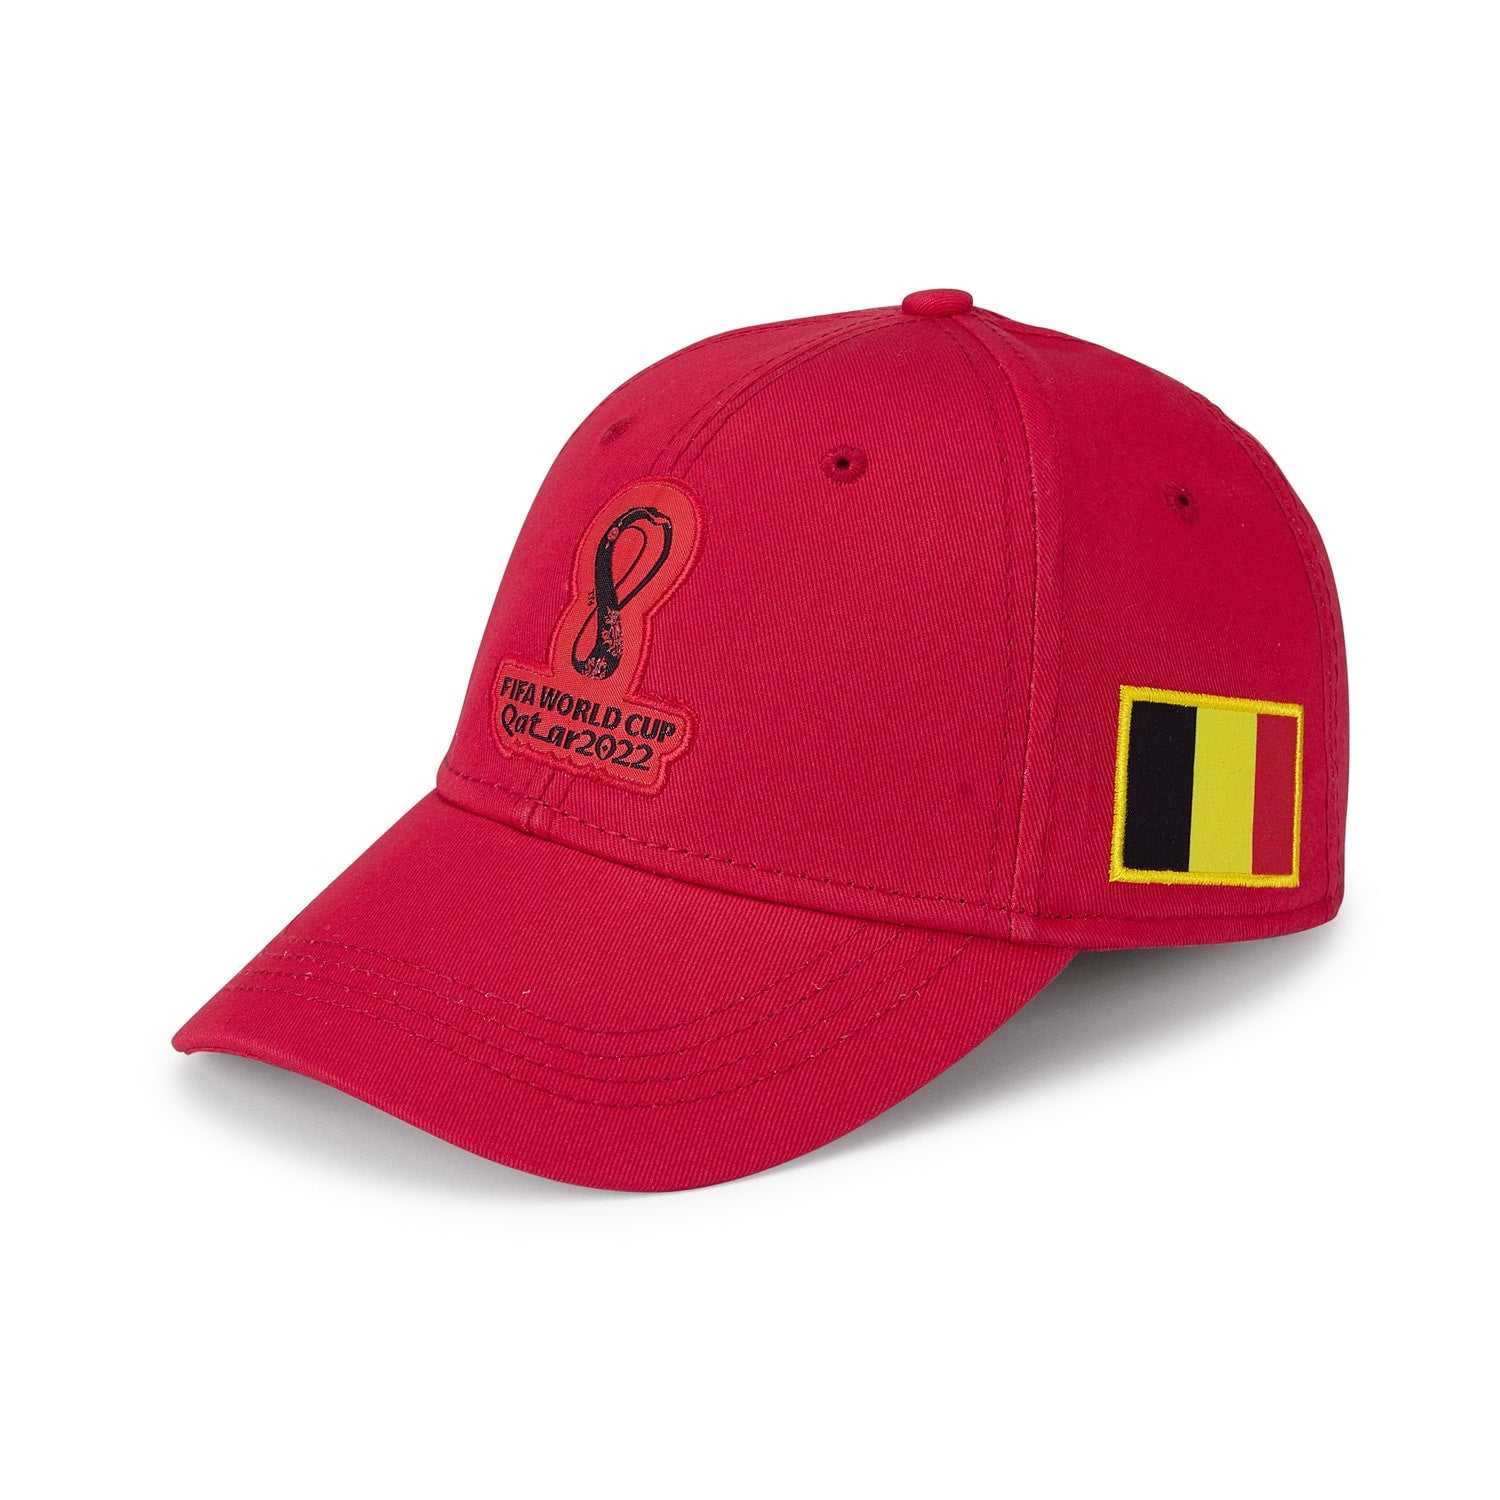 2022 World Cup Belgium Red Cap - Men's